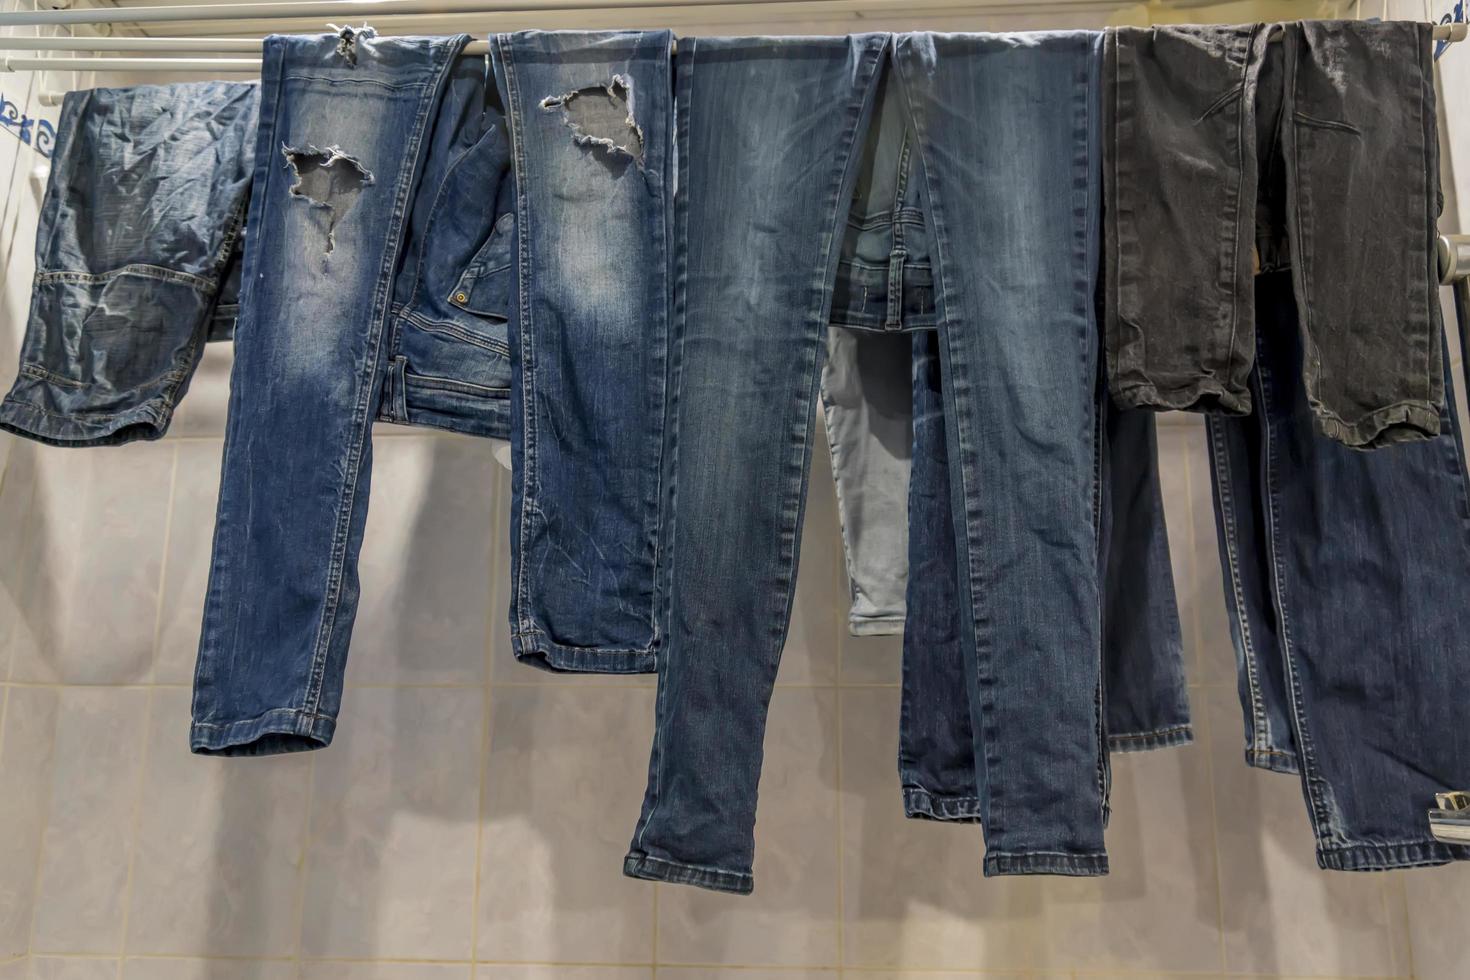 jeans limpios colgados en el baño foto